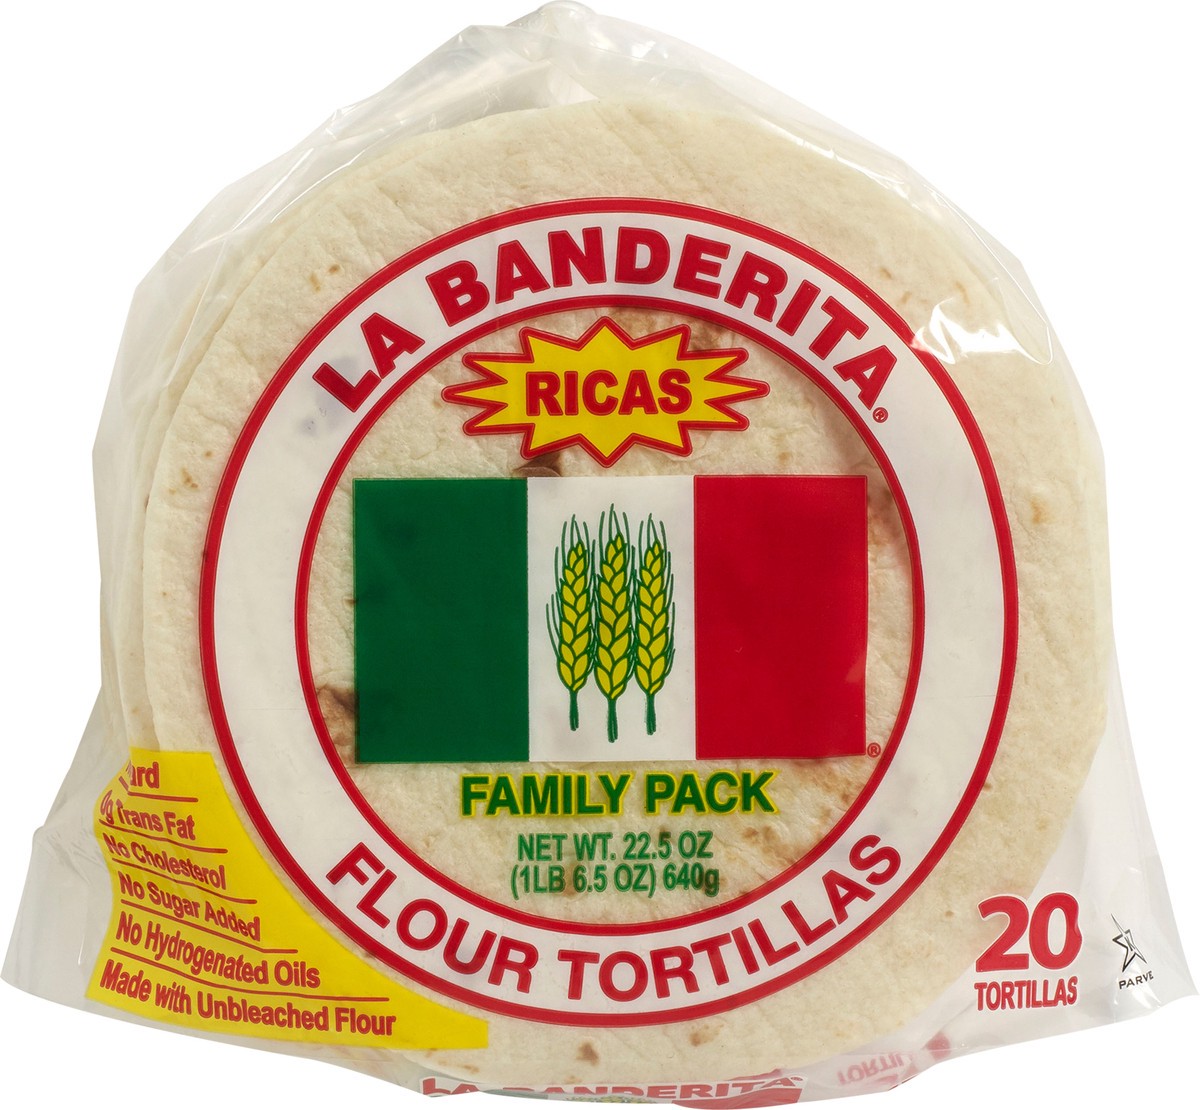 slide 6 of 9, La Banderita Family Pack Tortilla, 20 ct